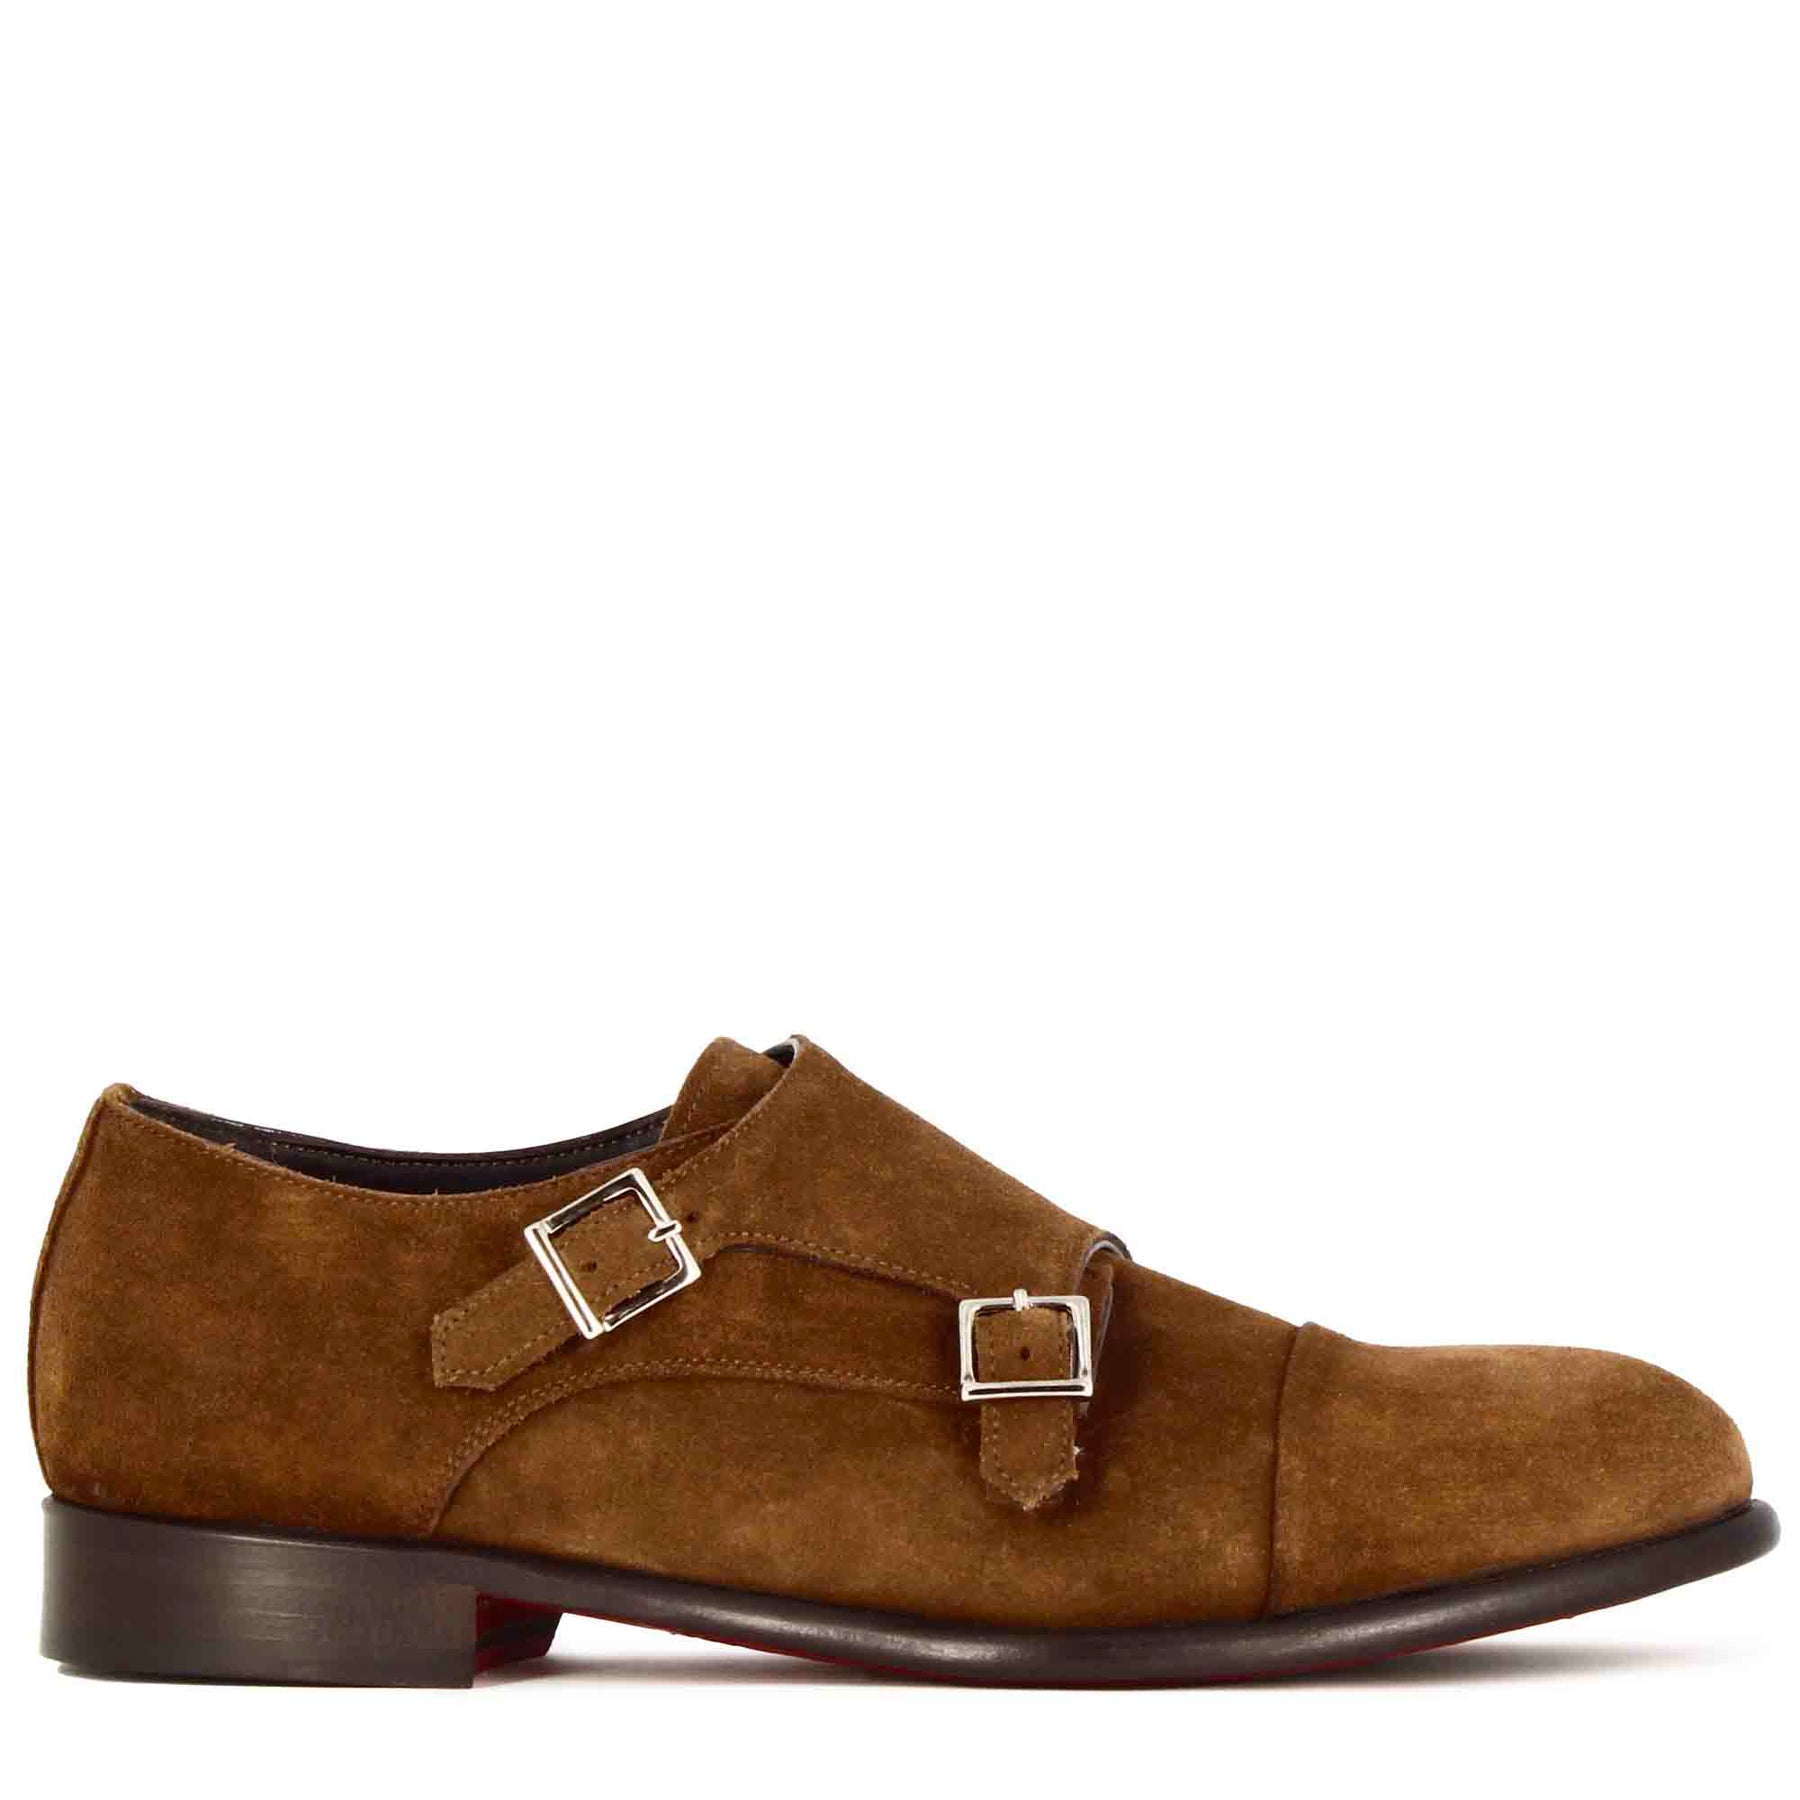 Double buckle men's shoe in light brown suede